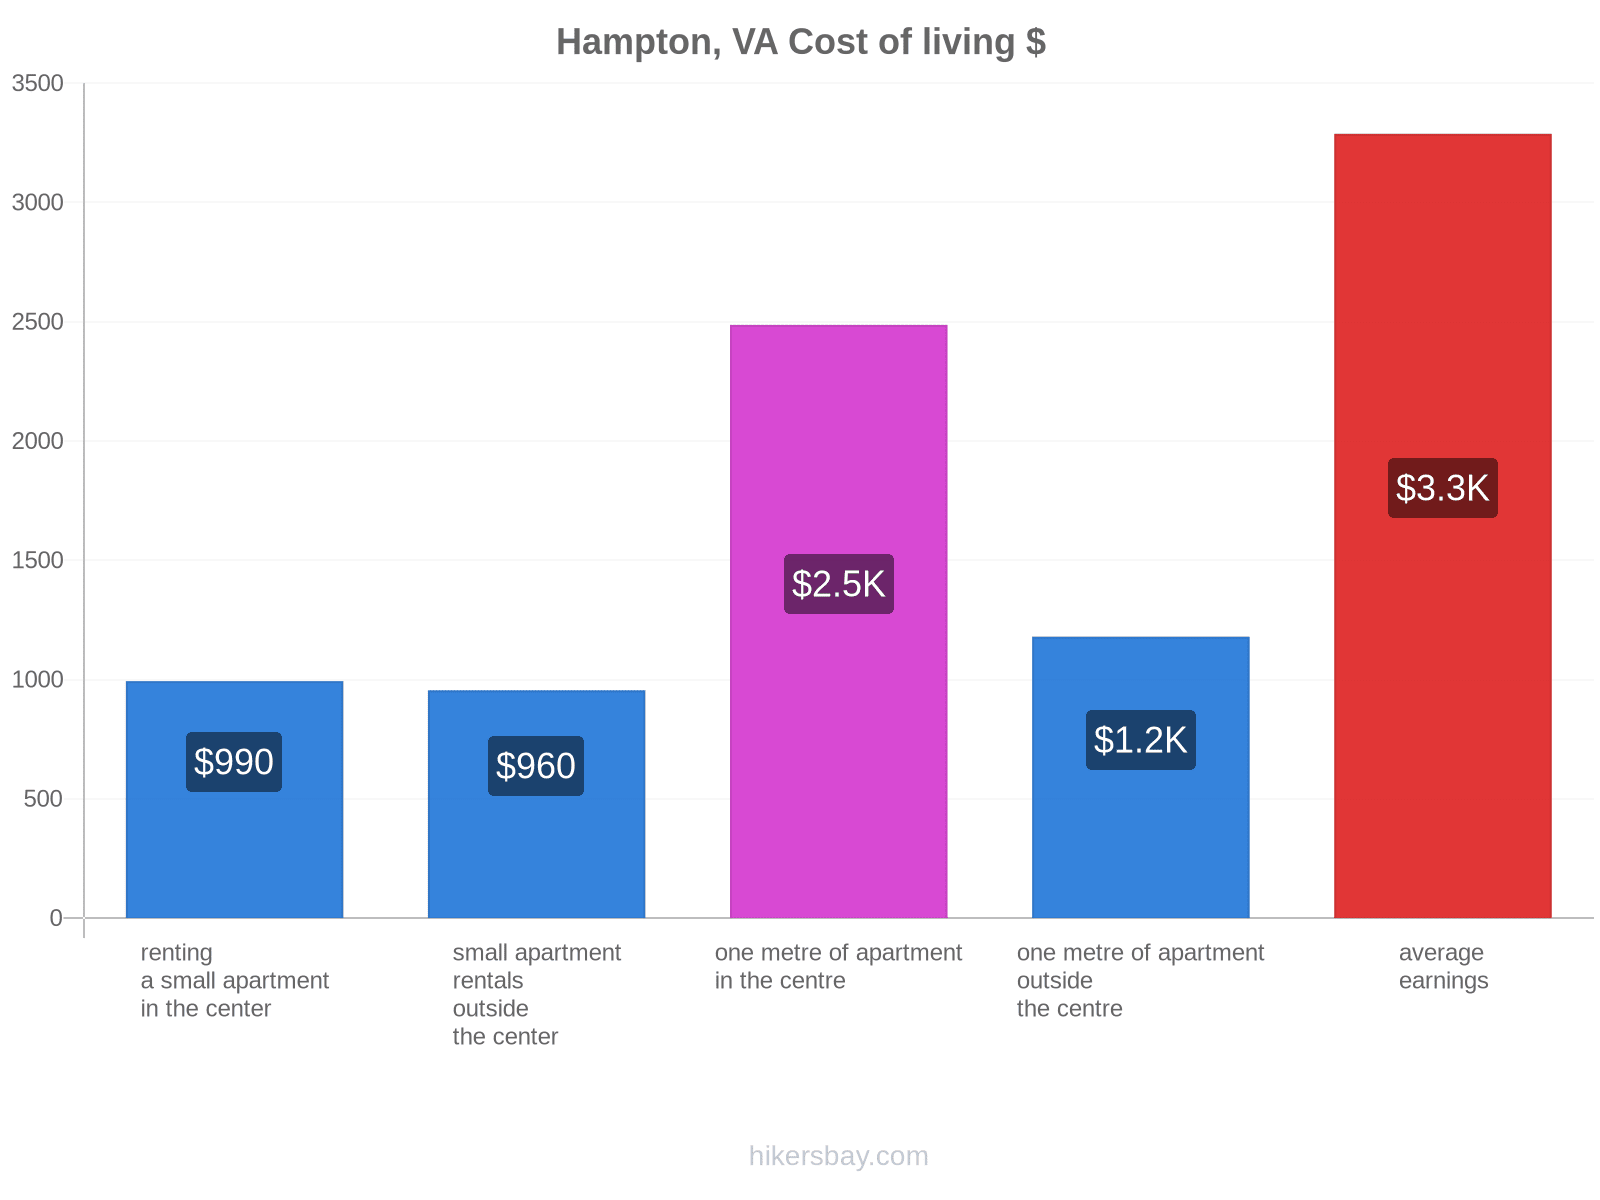 Hampton, VA cost of living hikersbay.com